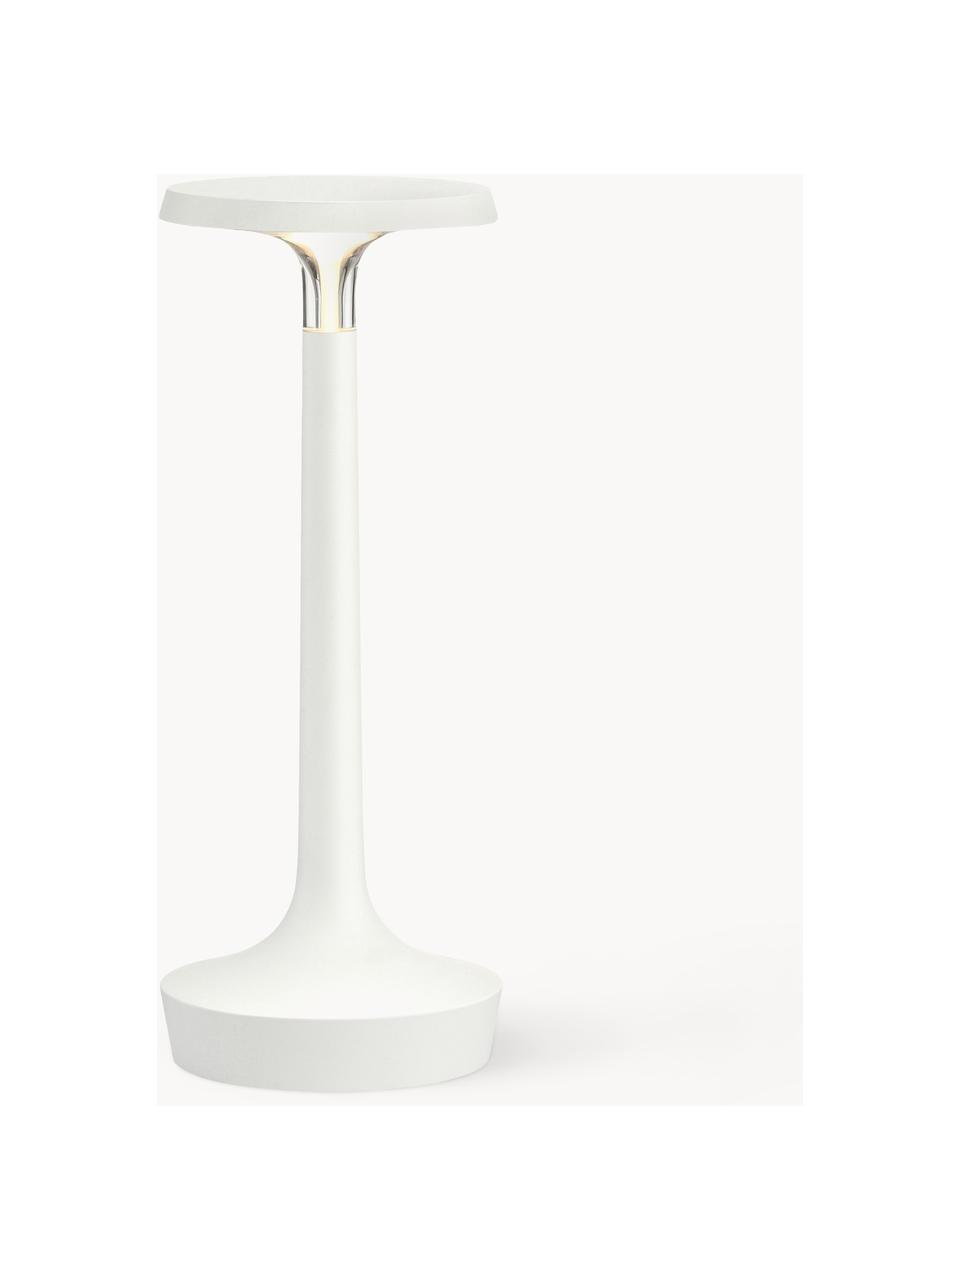 Lampa stołowa LED z funkcją przyciemniania Bon jour, Tworzywo sztuczne, Biały, Ø 11 x W 27 cm